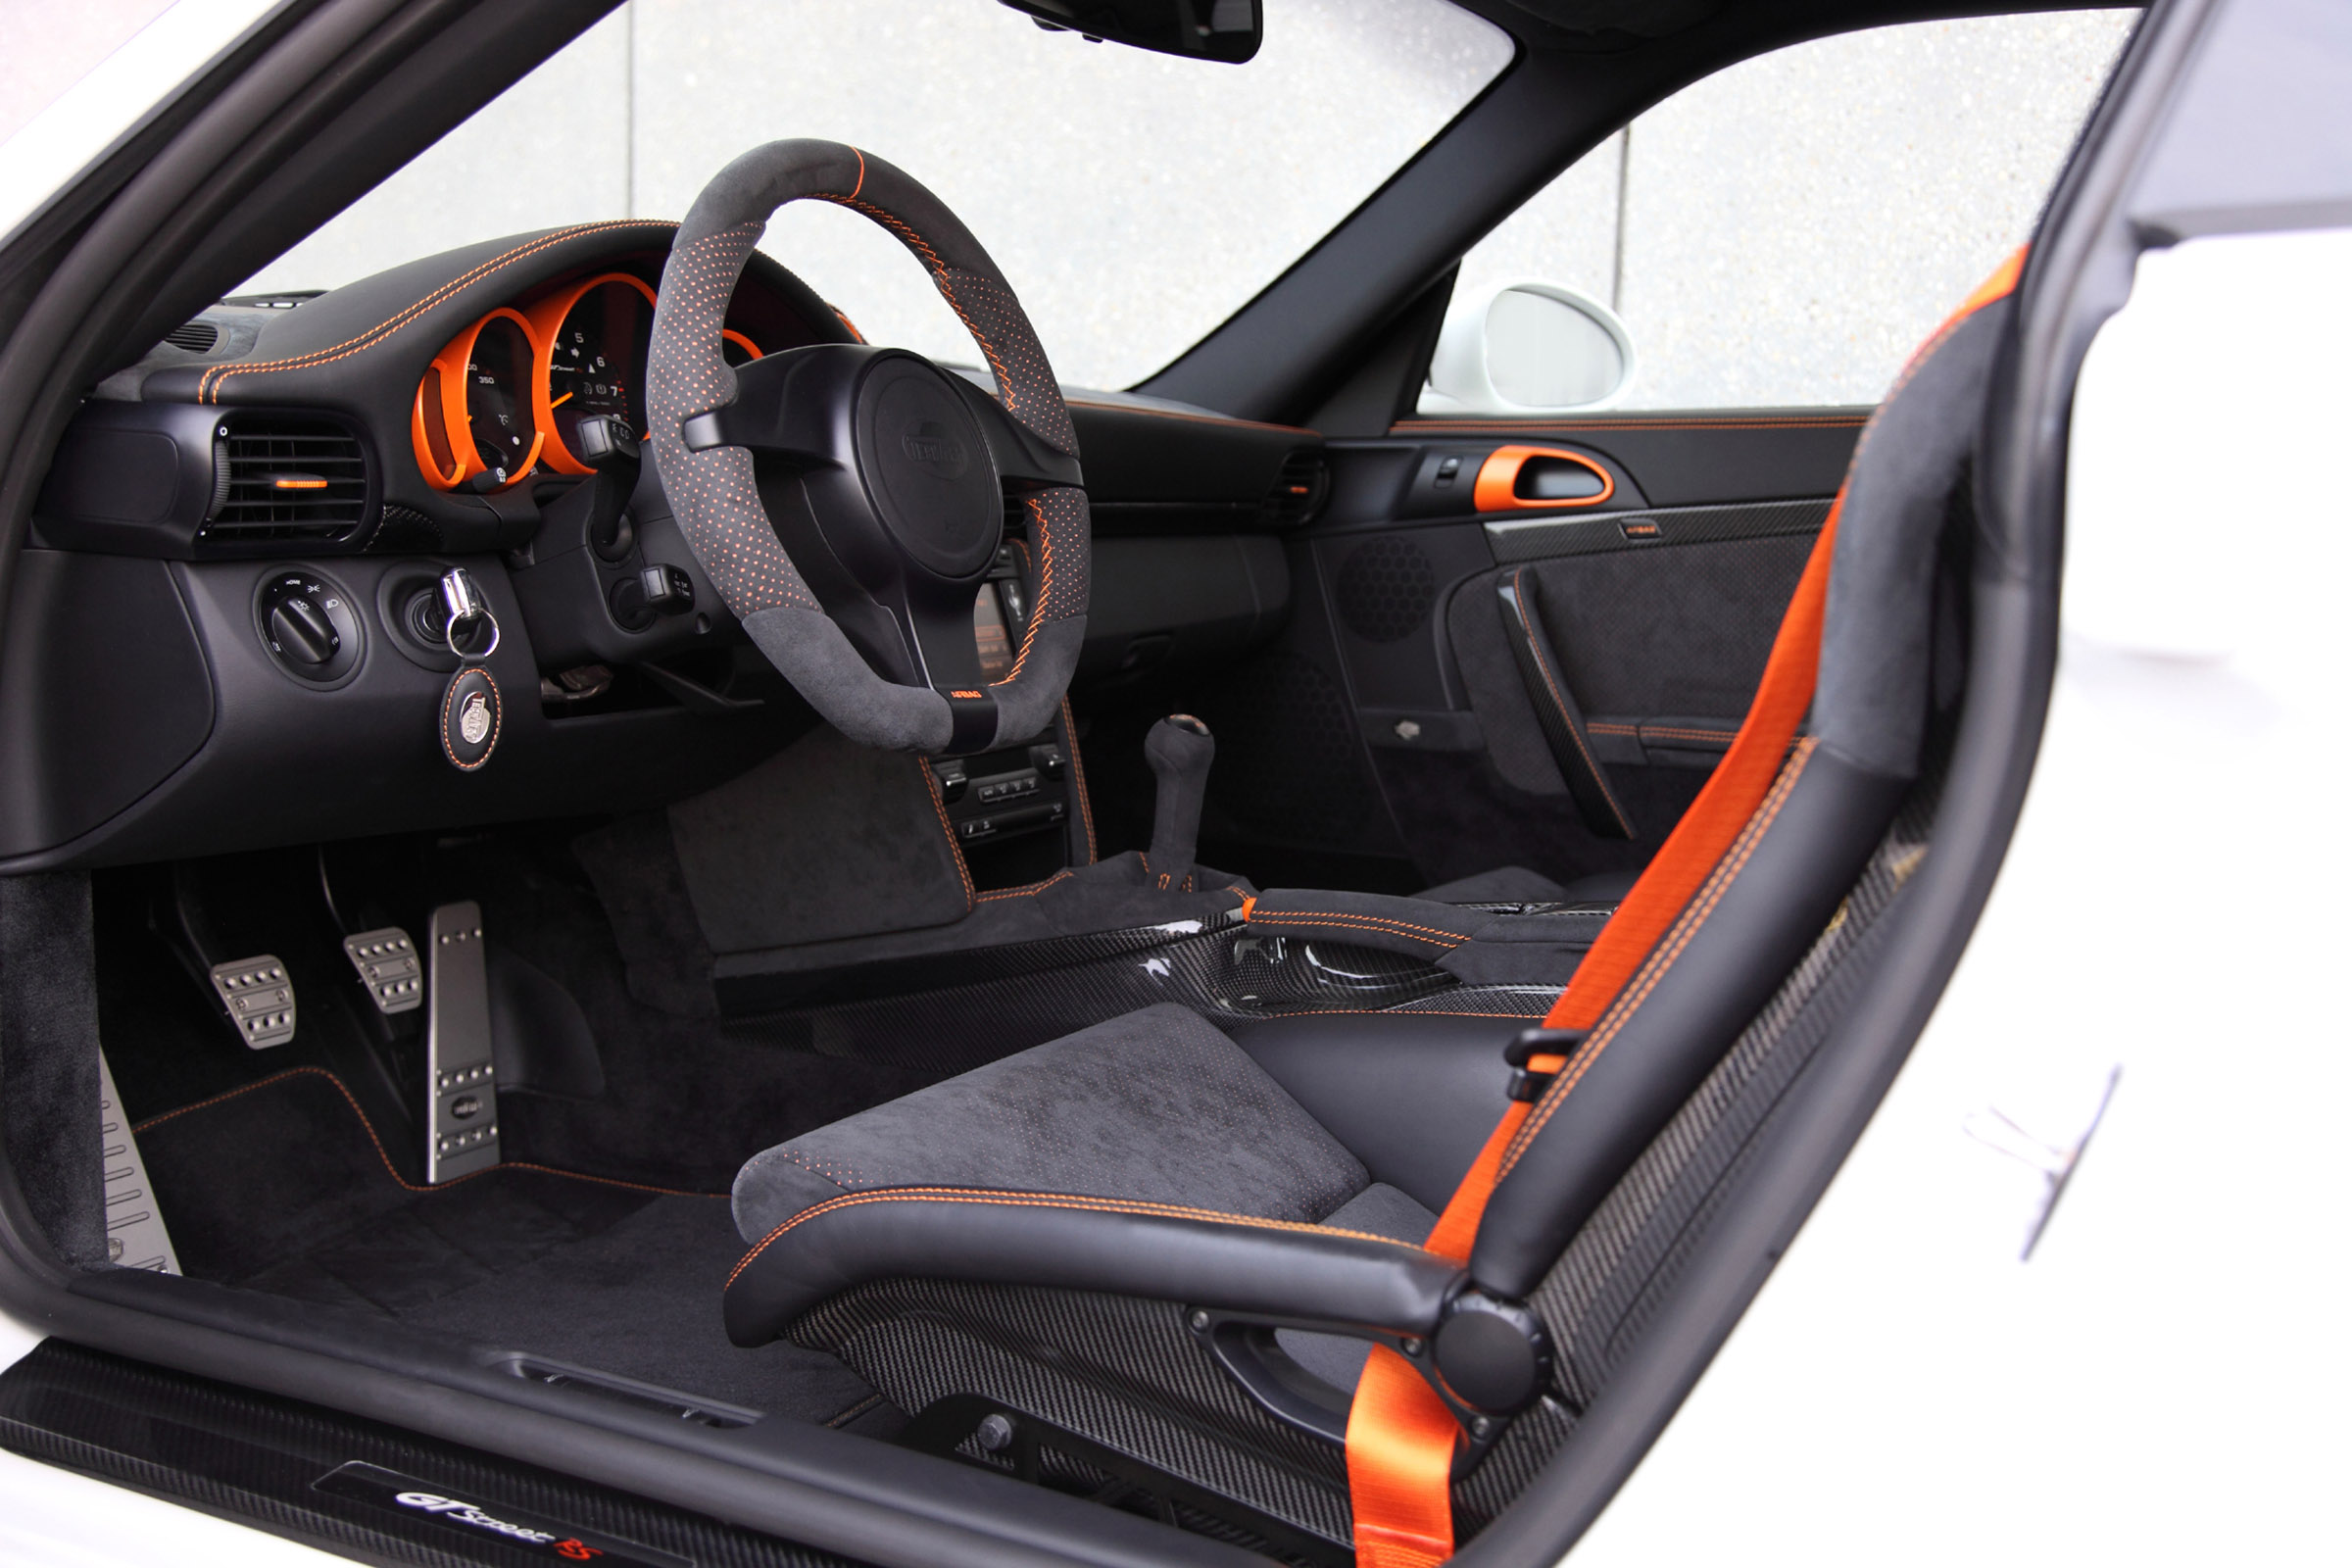 Techart Porsche GT Street RS